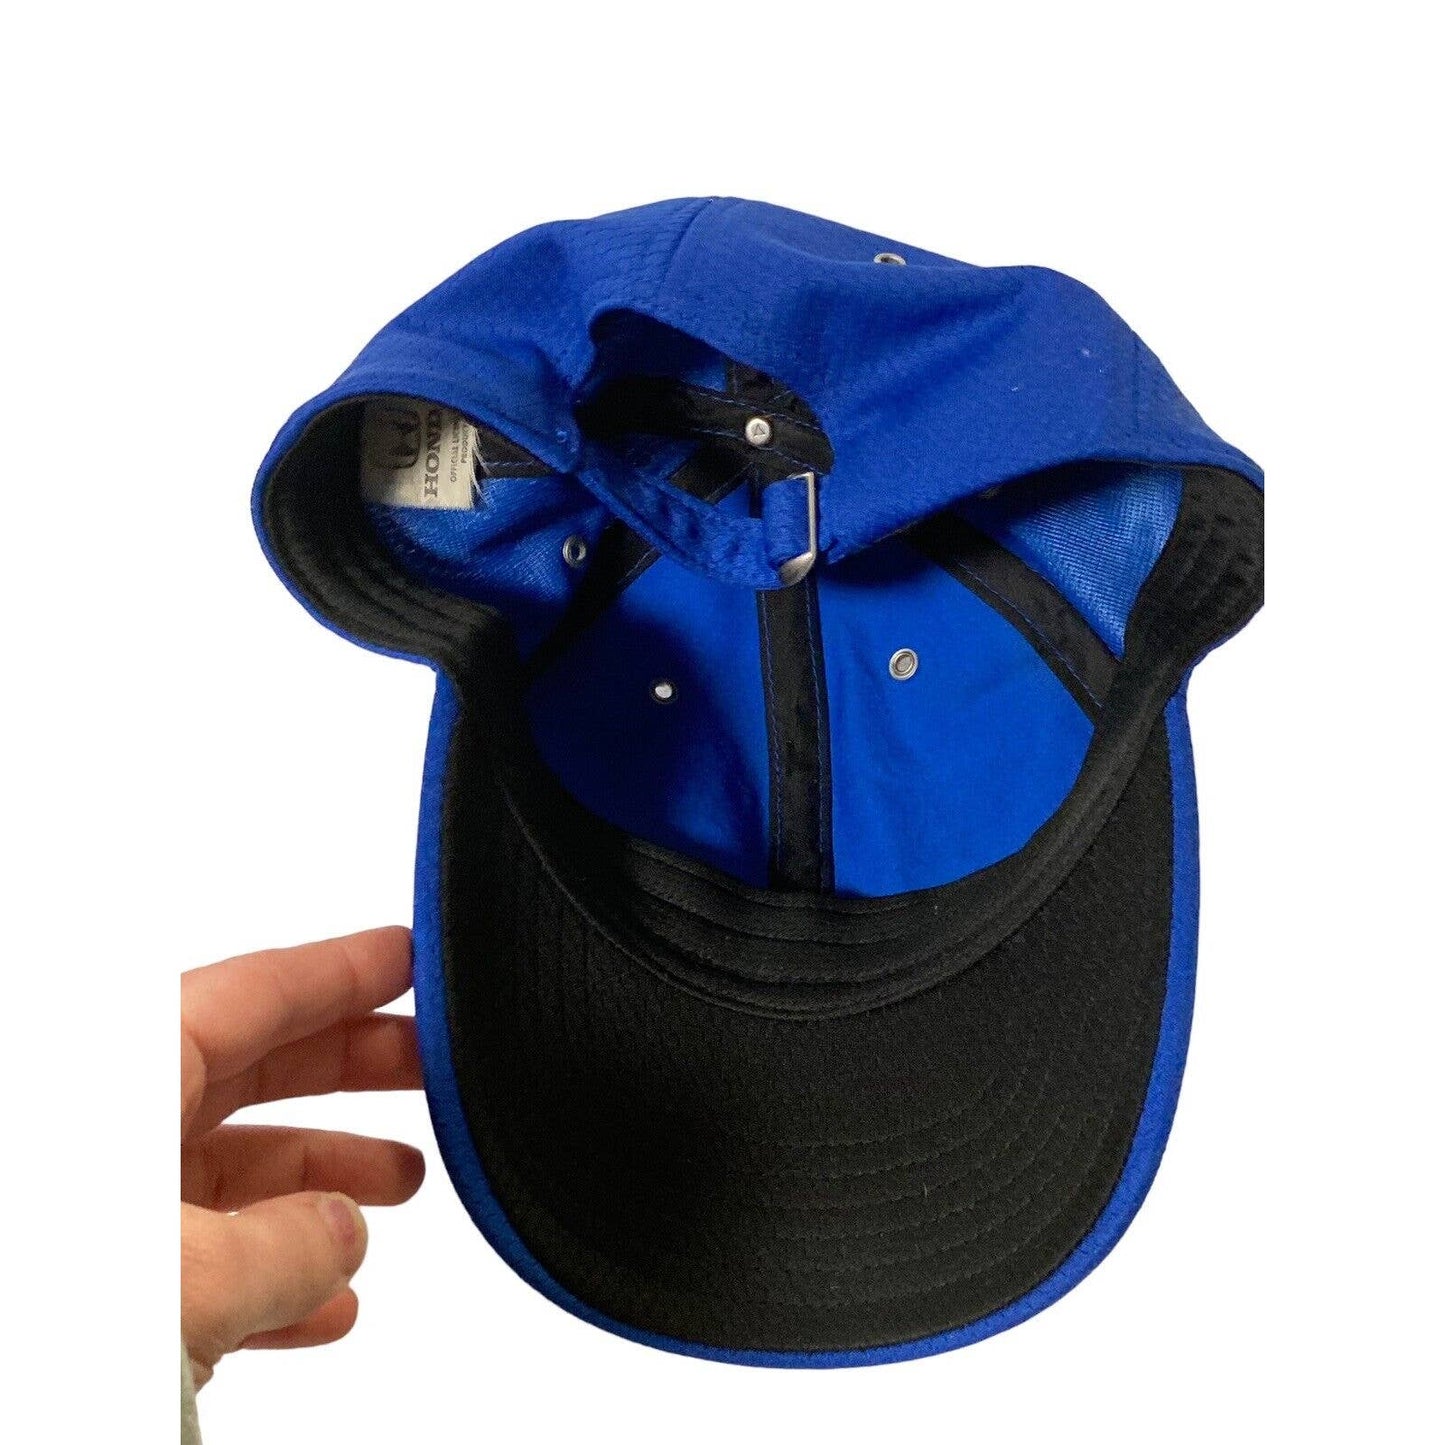 Honda Official Licensed Blue Embroidered Logo Adjustable Baseball Hat Cap Blue